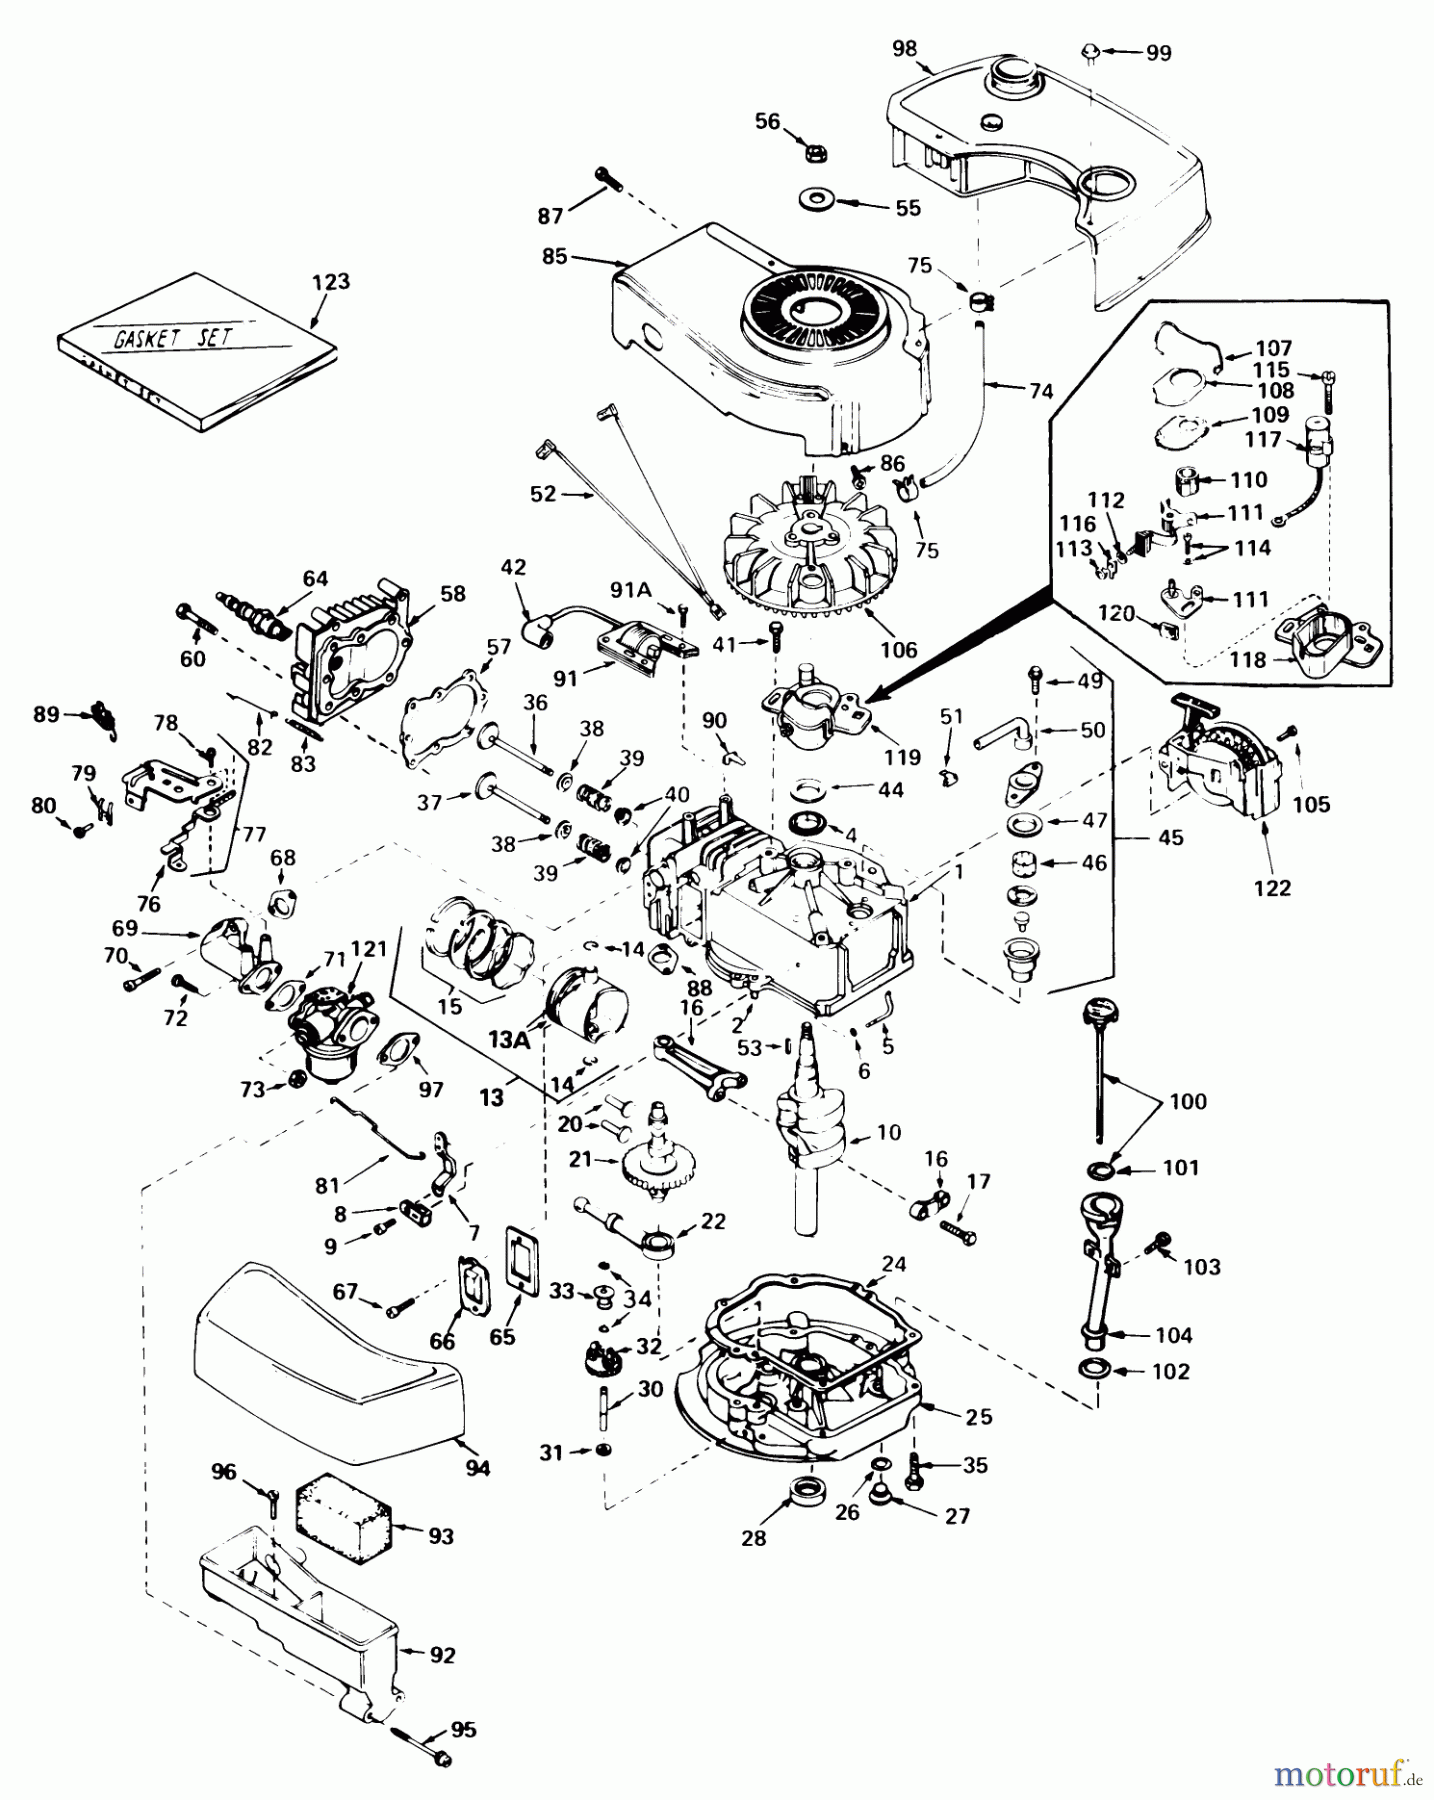  Toro Neu Mowers, Walk-Behind Seite 1 20772 - Toro Lawnmower, 1980 (0000001-0999999) ENGINE TECUMSEH MODEL NO. TNT 100-10066C